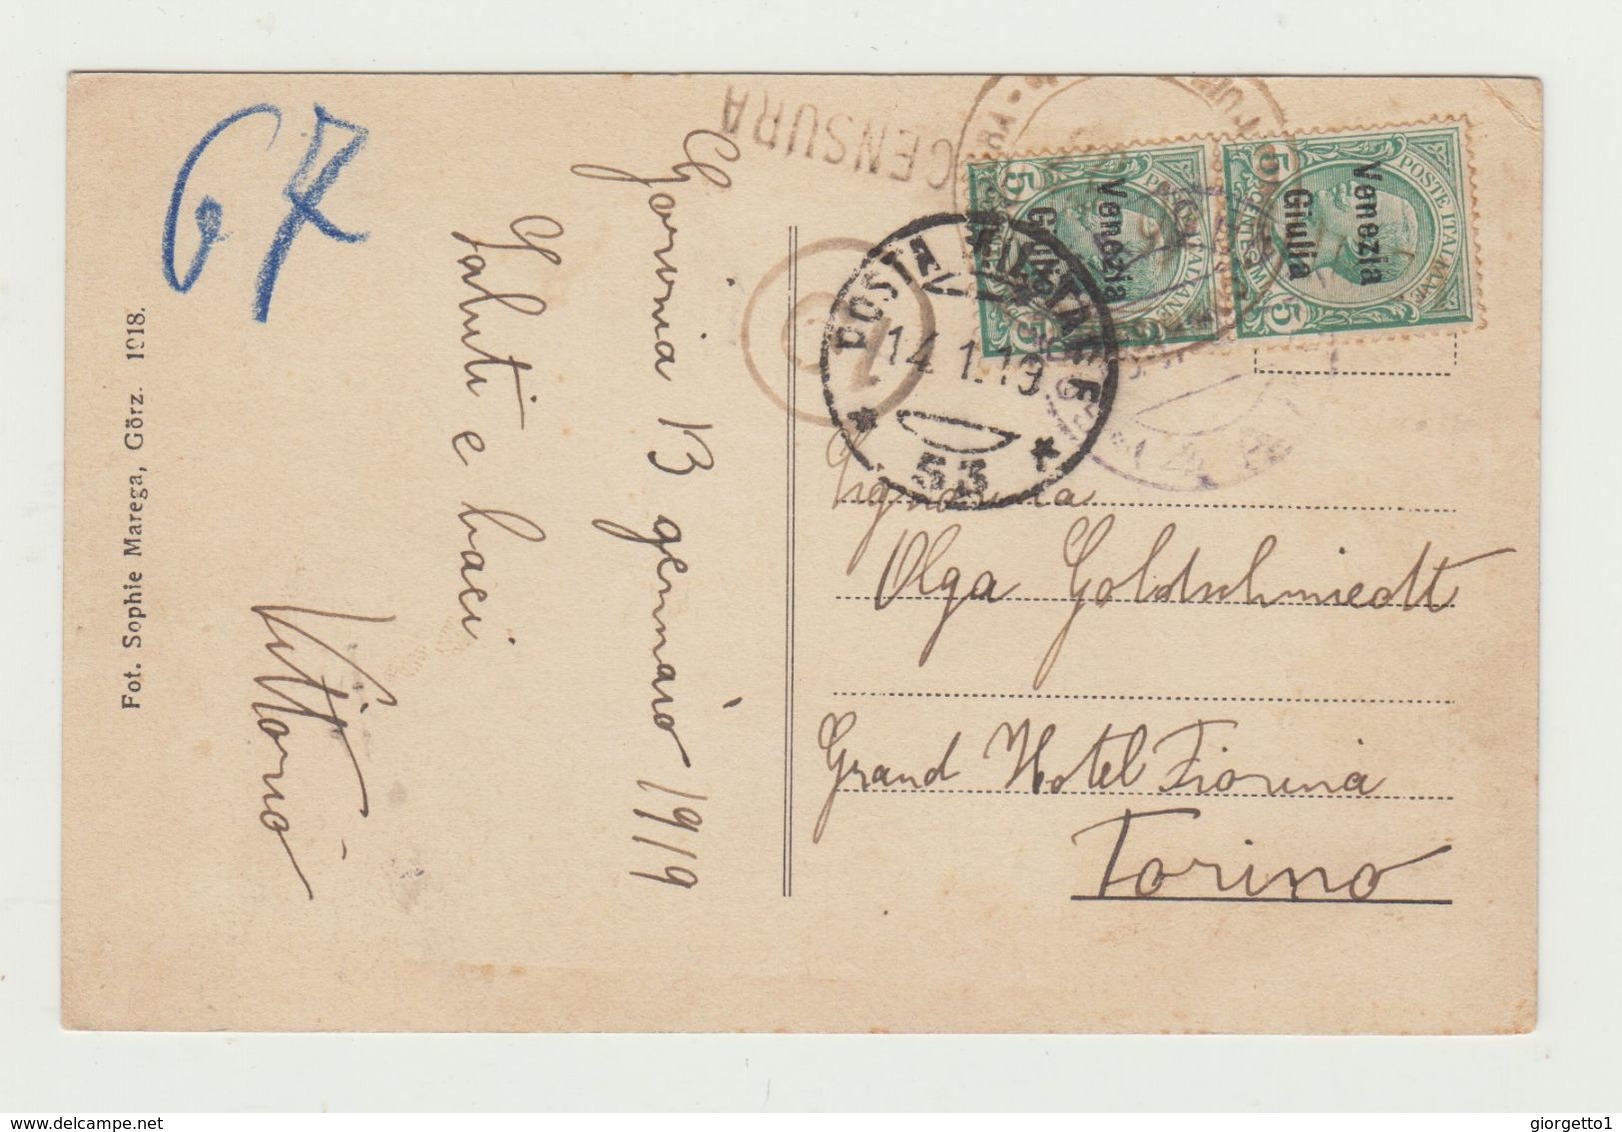 GORIZIA - PAESAGGIO CON PONTE POSTA MILITARE 53 - 14.01.1919 - AFFRANCATURA 5+5 CENT SOVRASTAMPA VENEZIA GIULIA - CARD - Gorizia